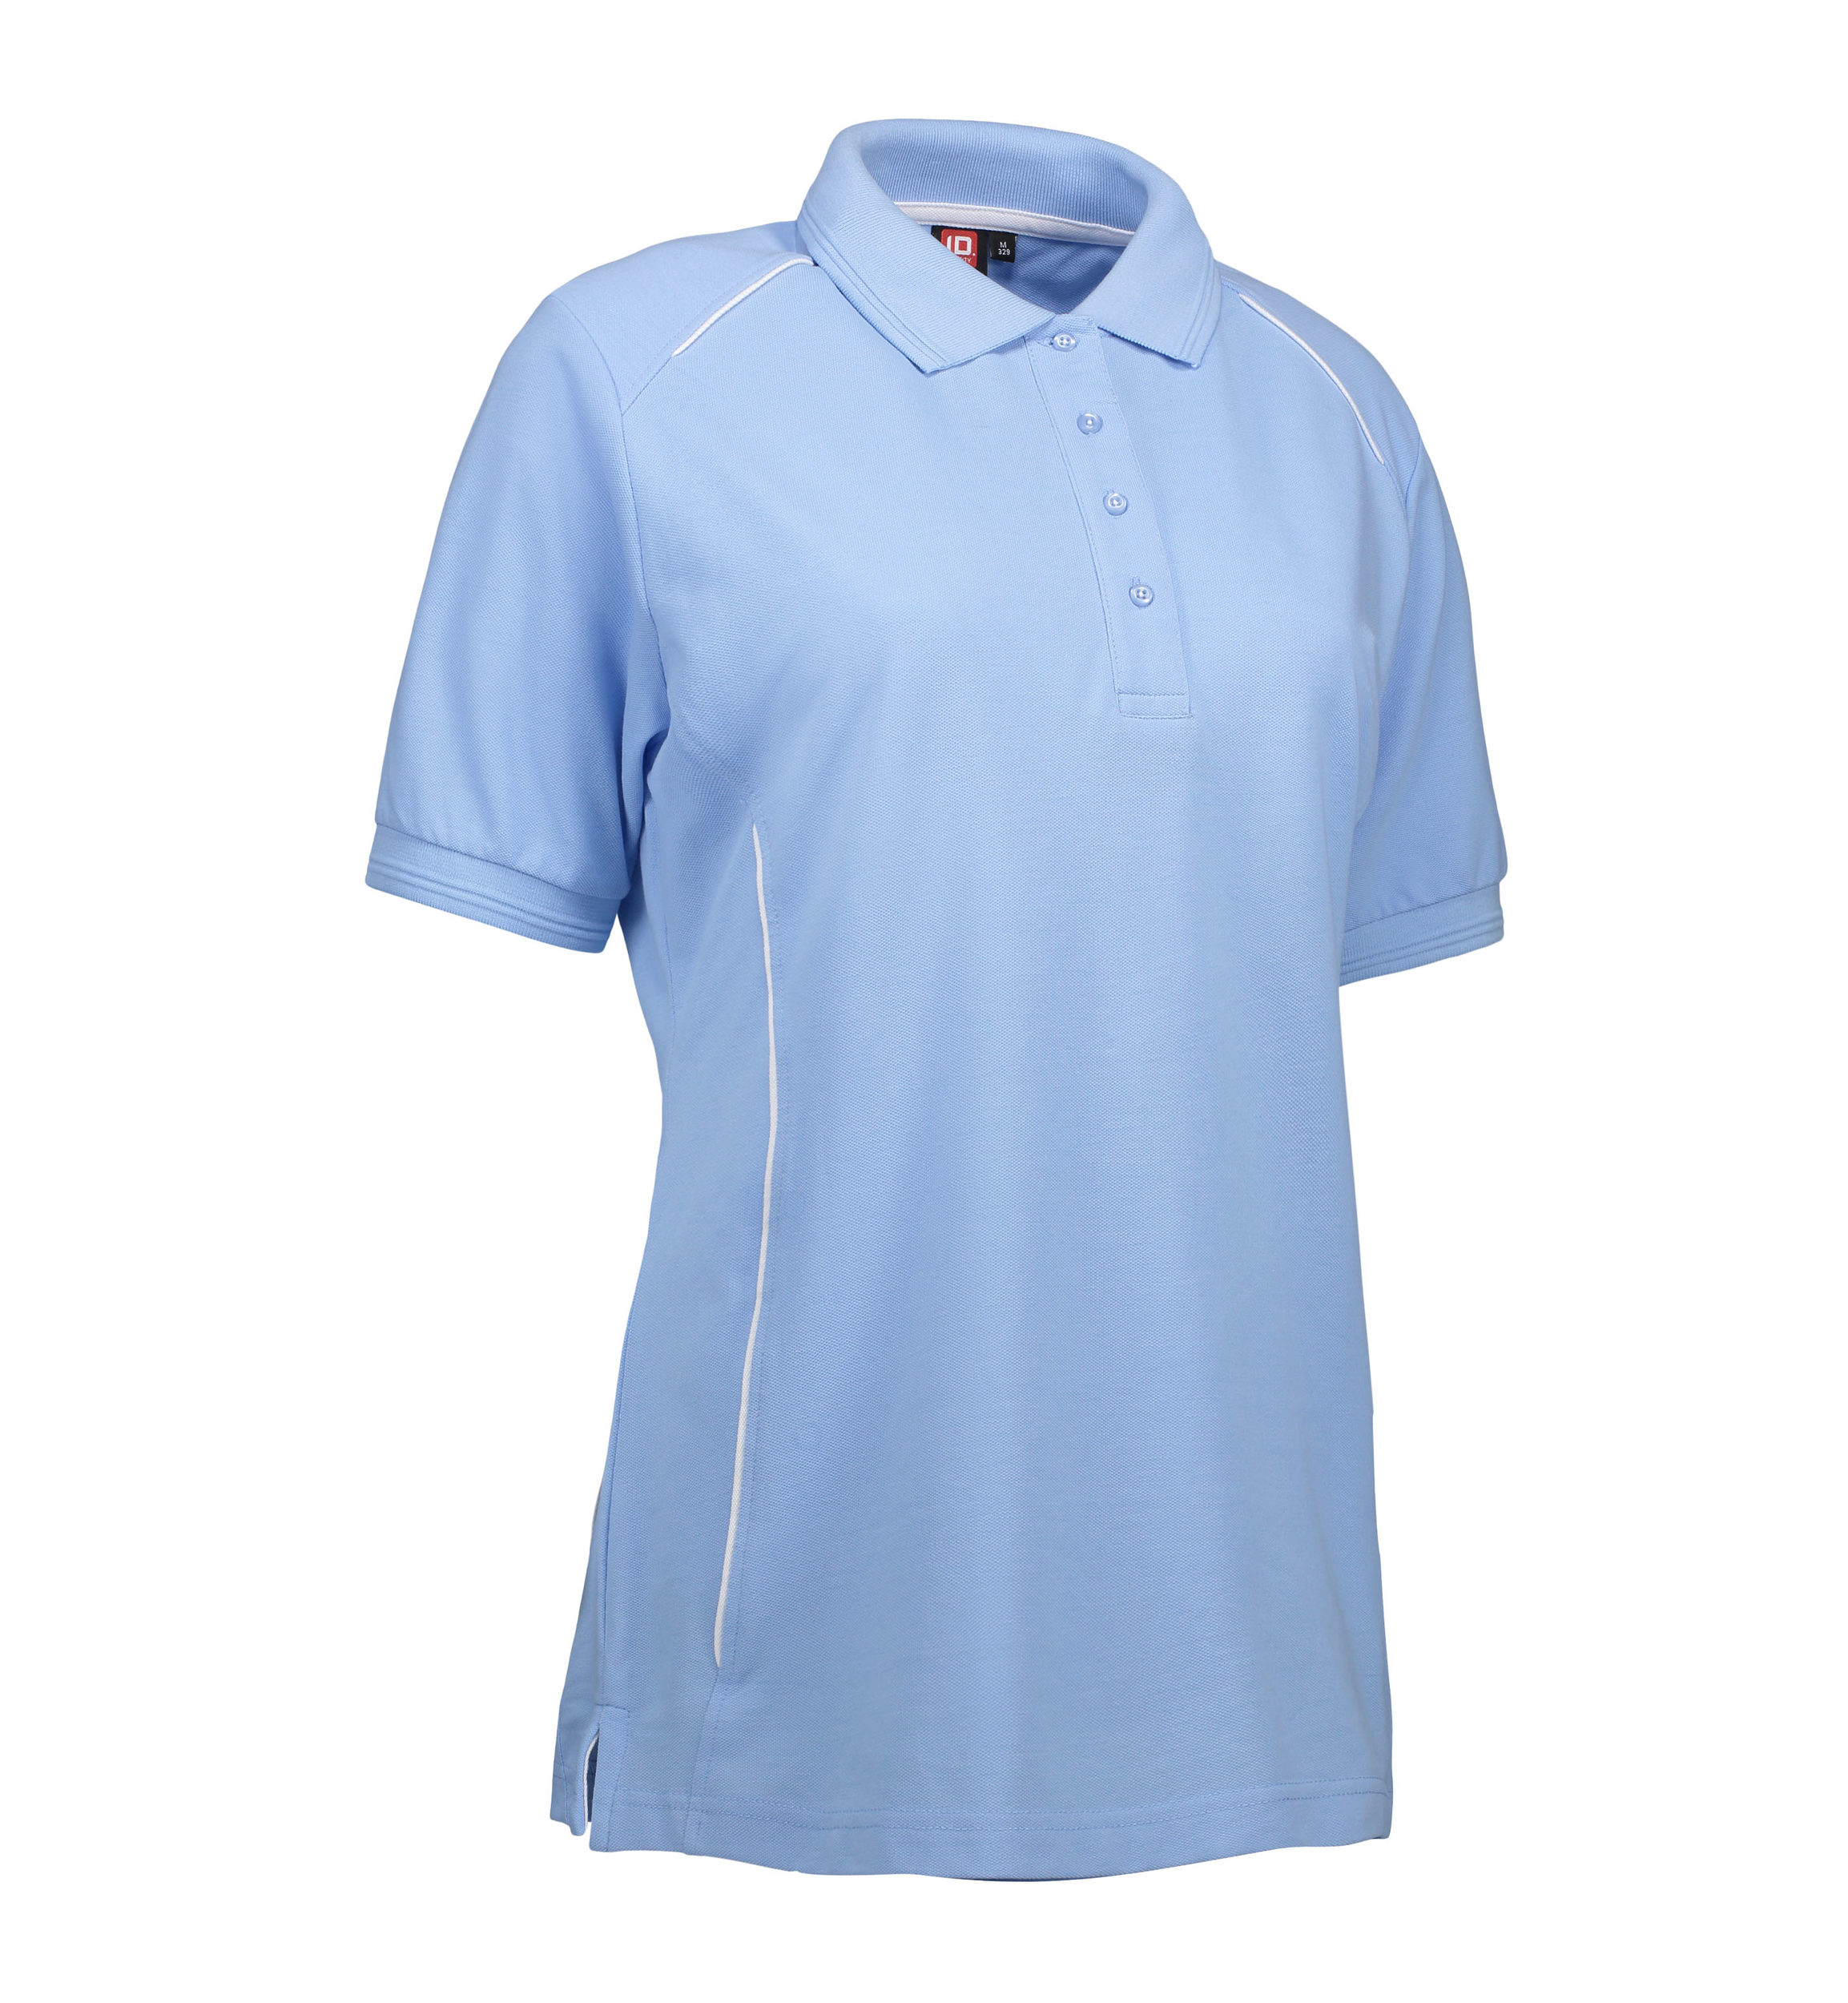 Se Slidstærk polo t-shirt i lyseblå til damer - XL hos Sygeplejebutikken.dk